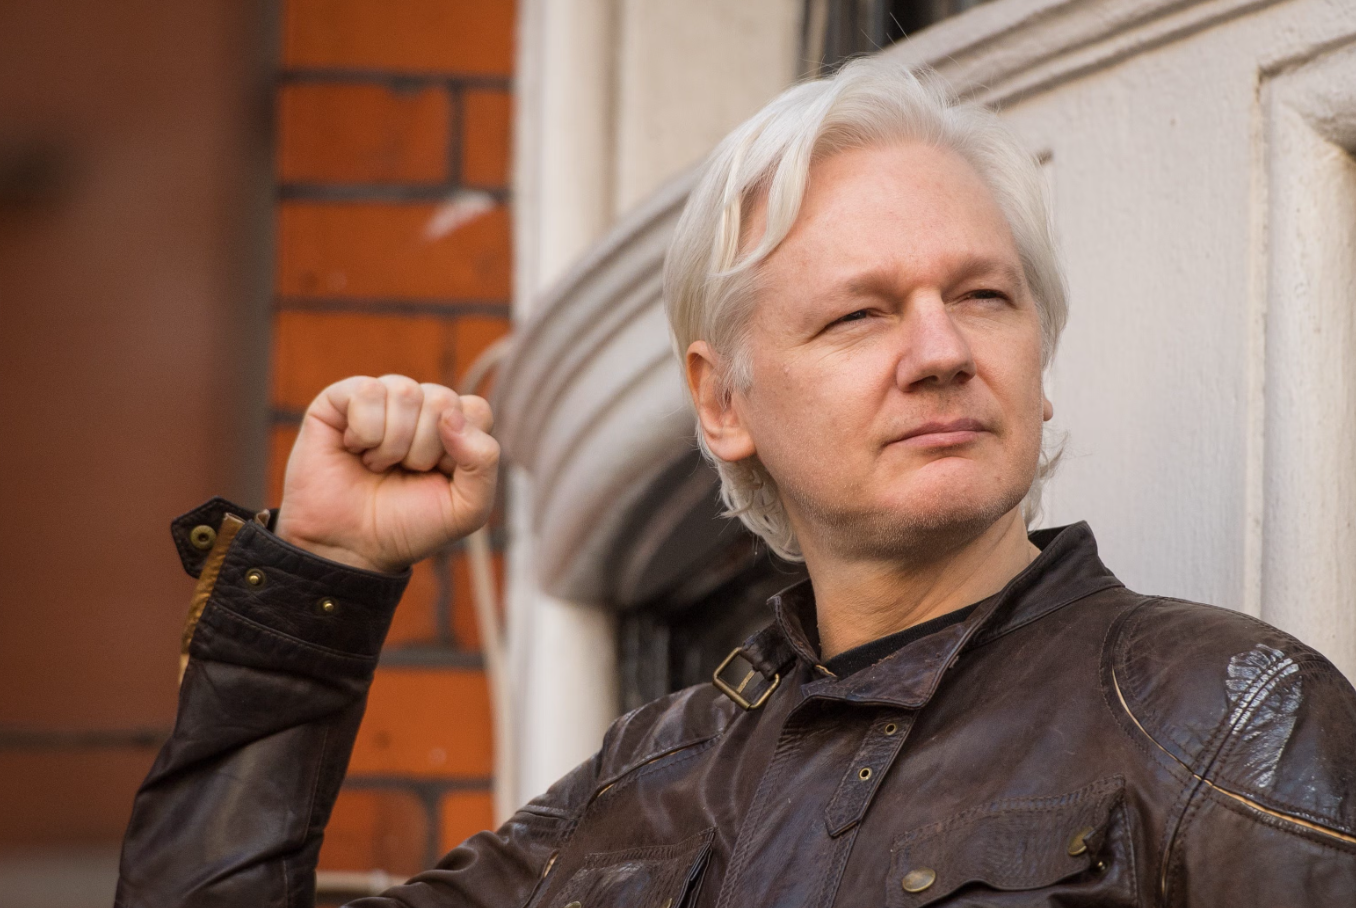 ‘Wikileaks’ founder Julian Assange released from custody via plea deal